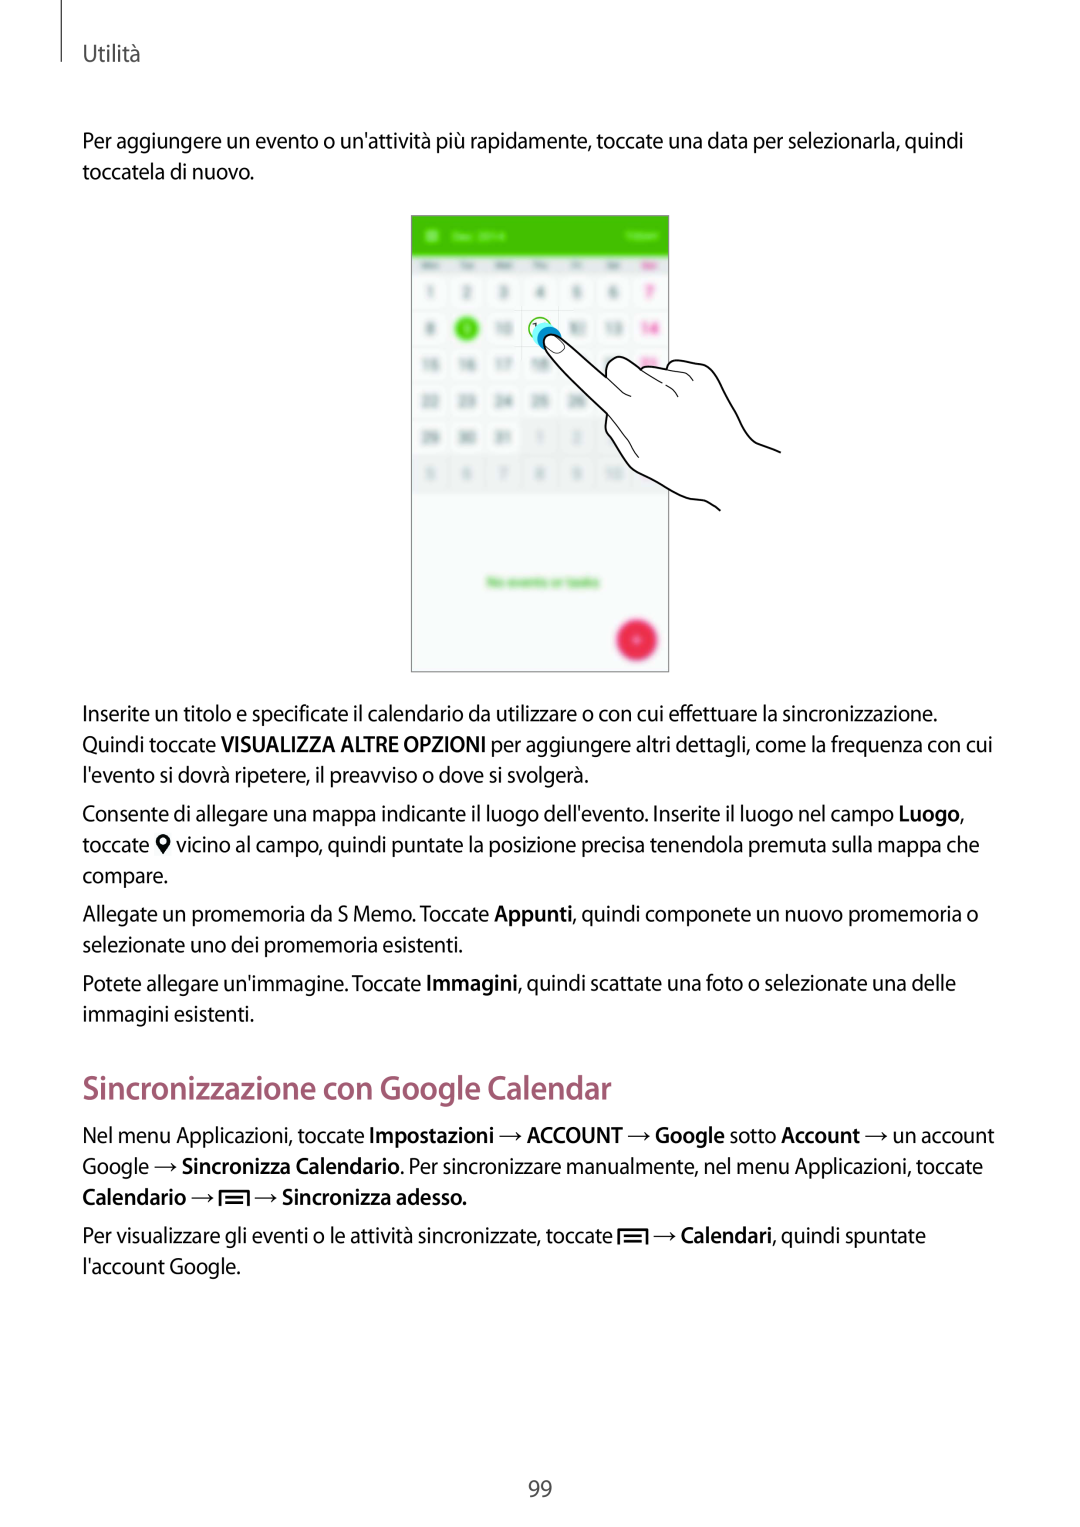 Samsung GT-I9515ZWAOMN, GT-I9515ZSADBT Sincronizzazione con Google Calendar, Calendario → → Sincronizza adesso, Utilità 